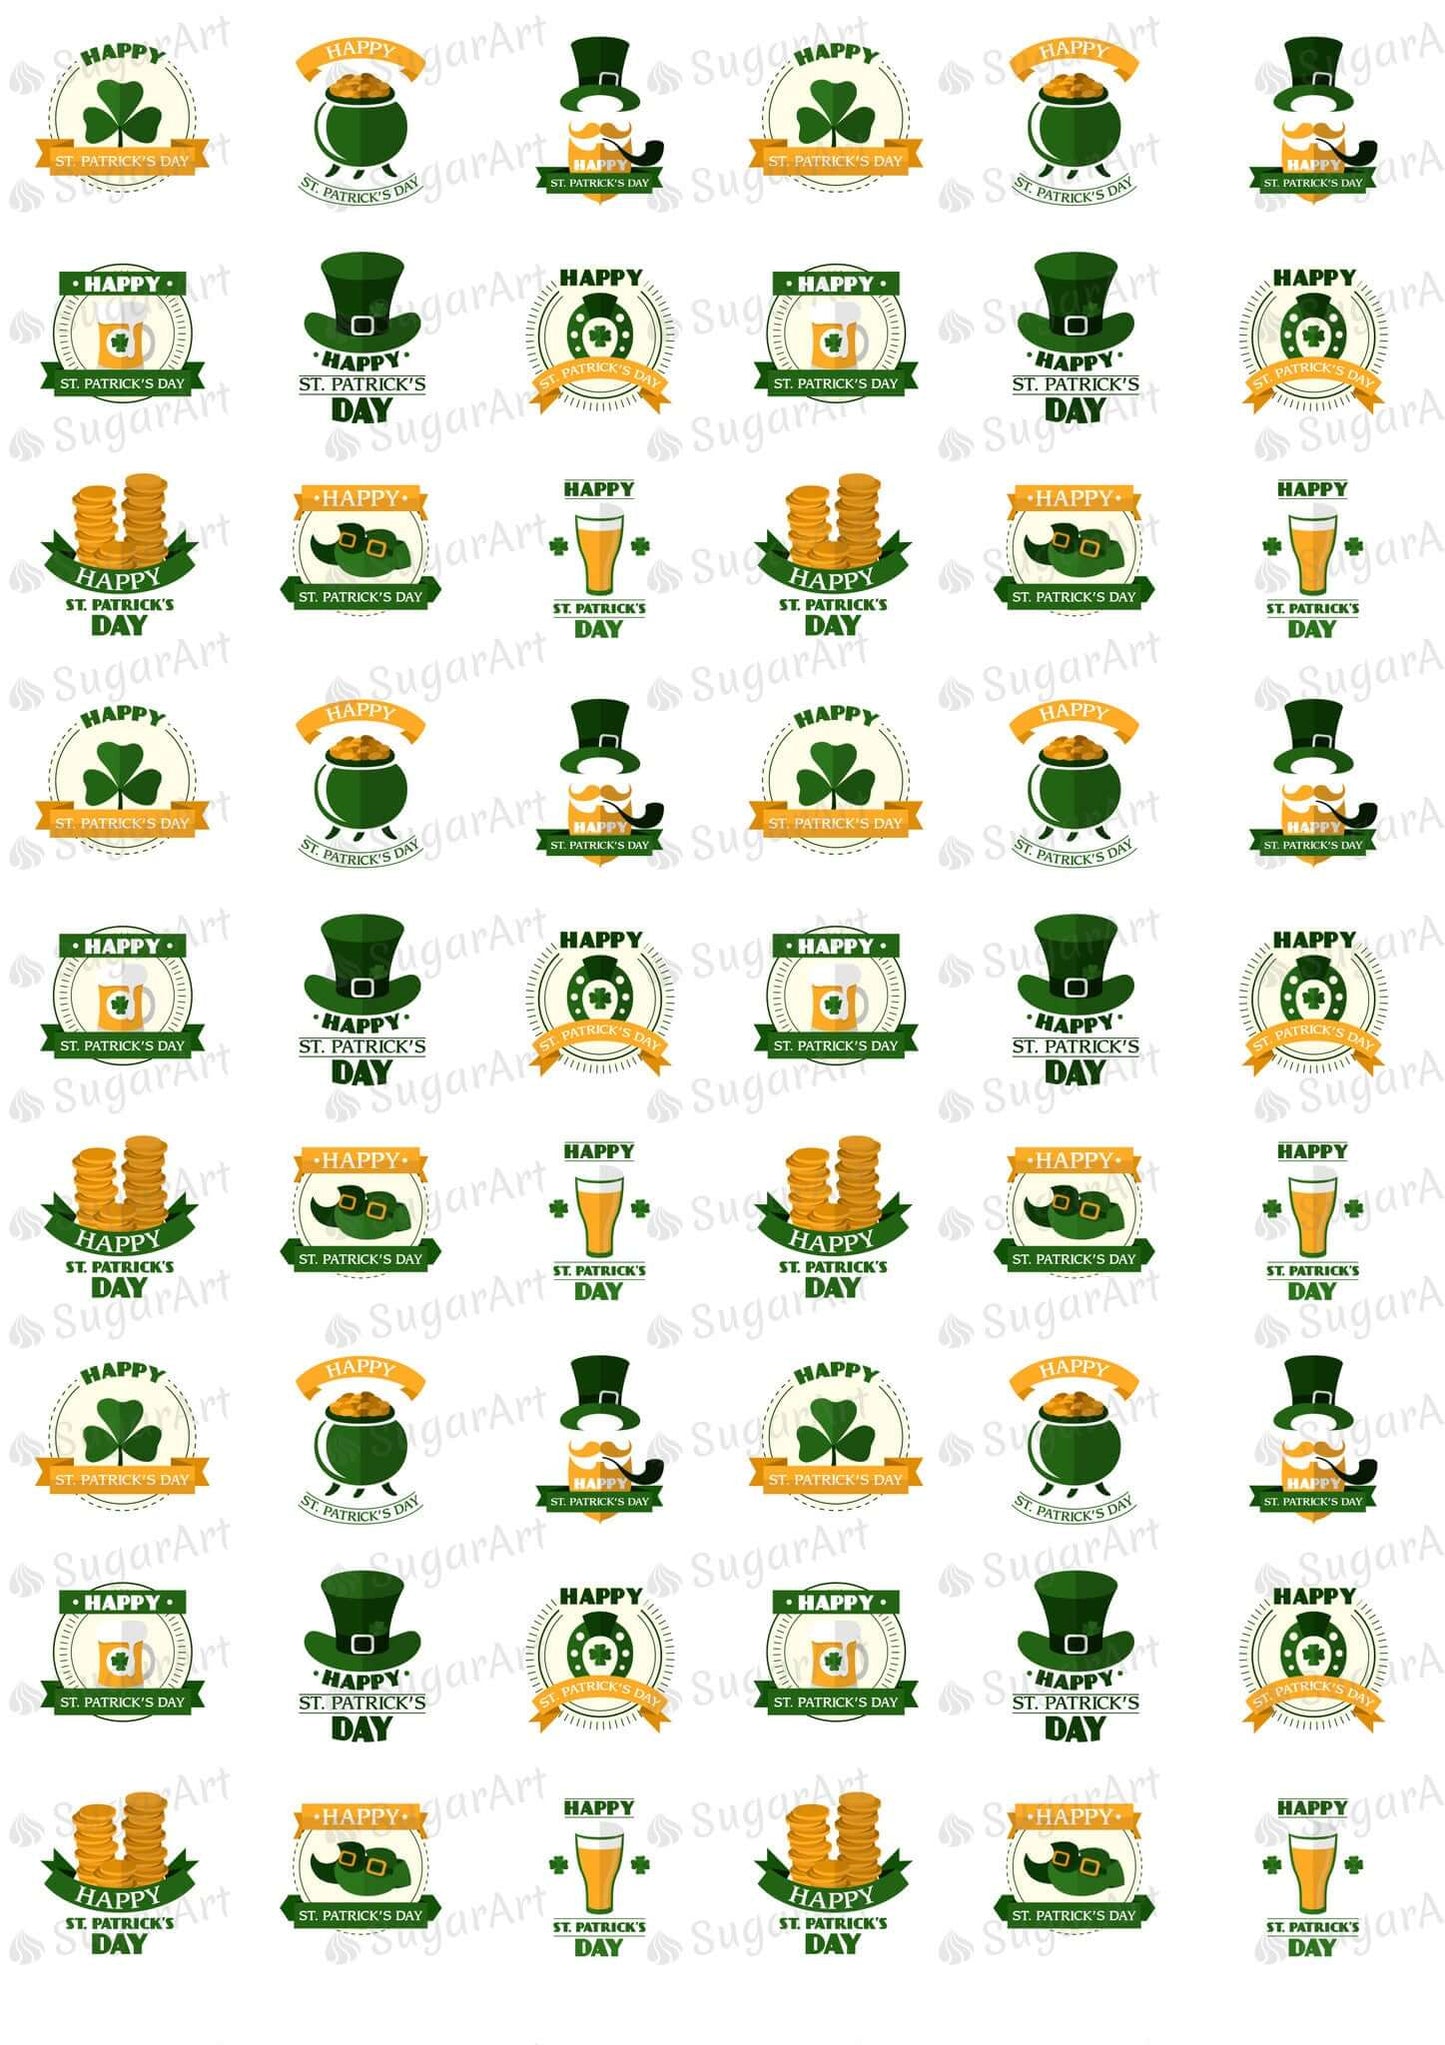 Happy St. Patrick's Day! - HSA020-Sugar Stamp sheets-Sugar Art